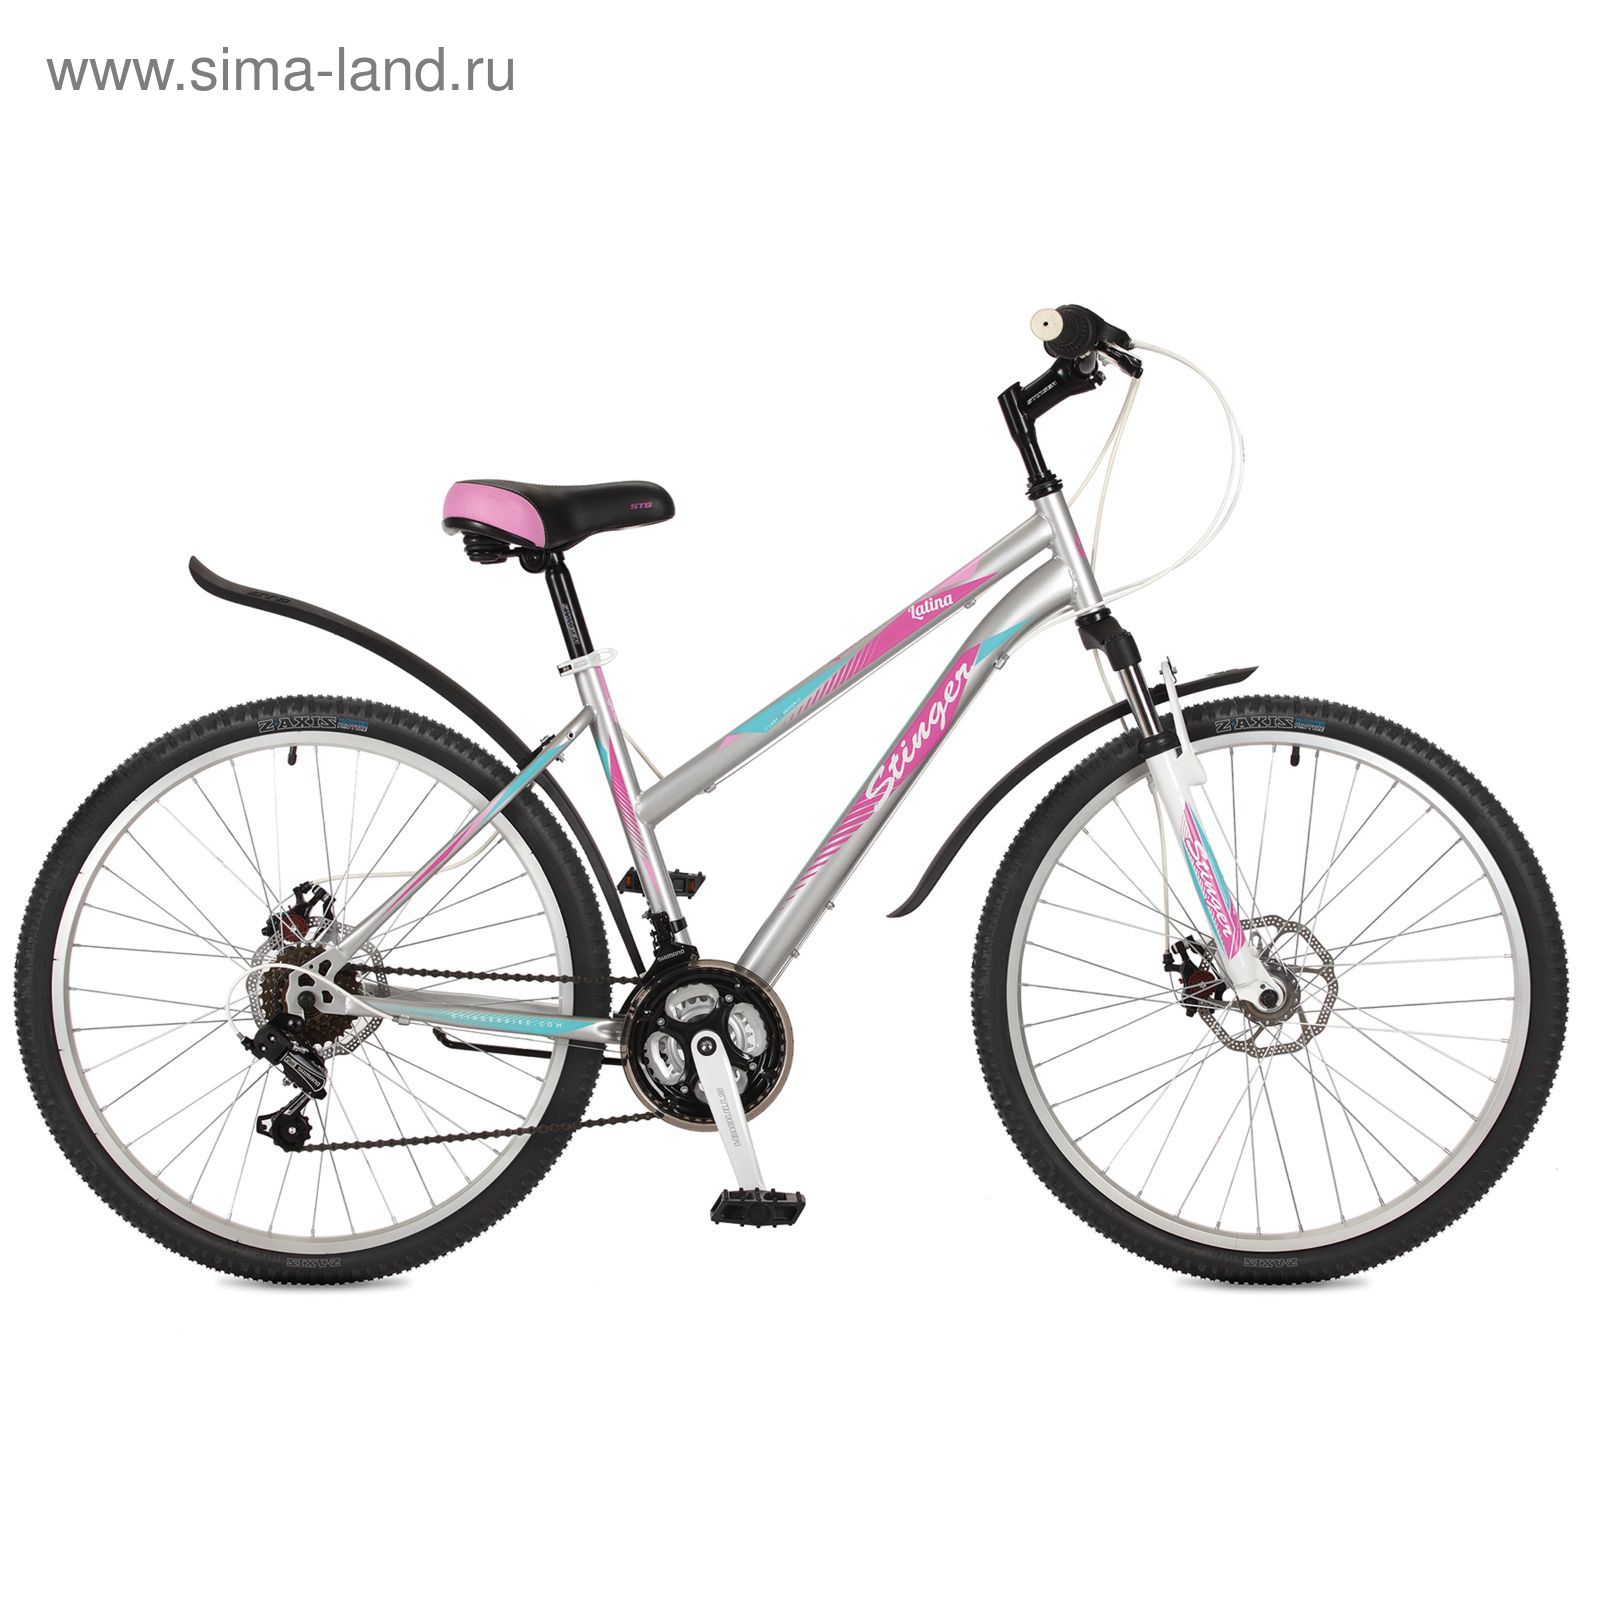 Велосипед 26" Stinger Latina D, 2017, цвет серый, размер 15"